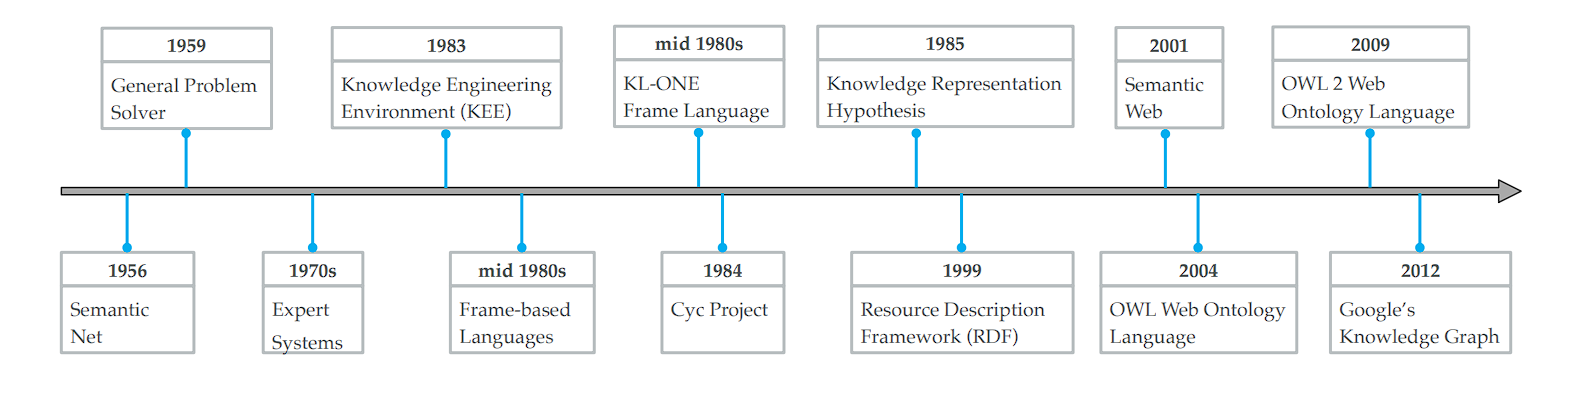 timeline of knwlege graphs